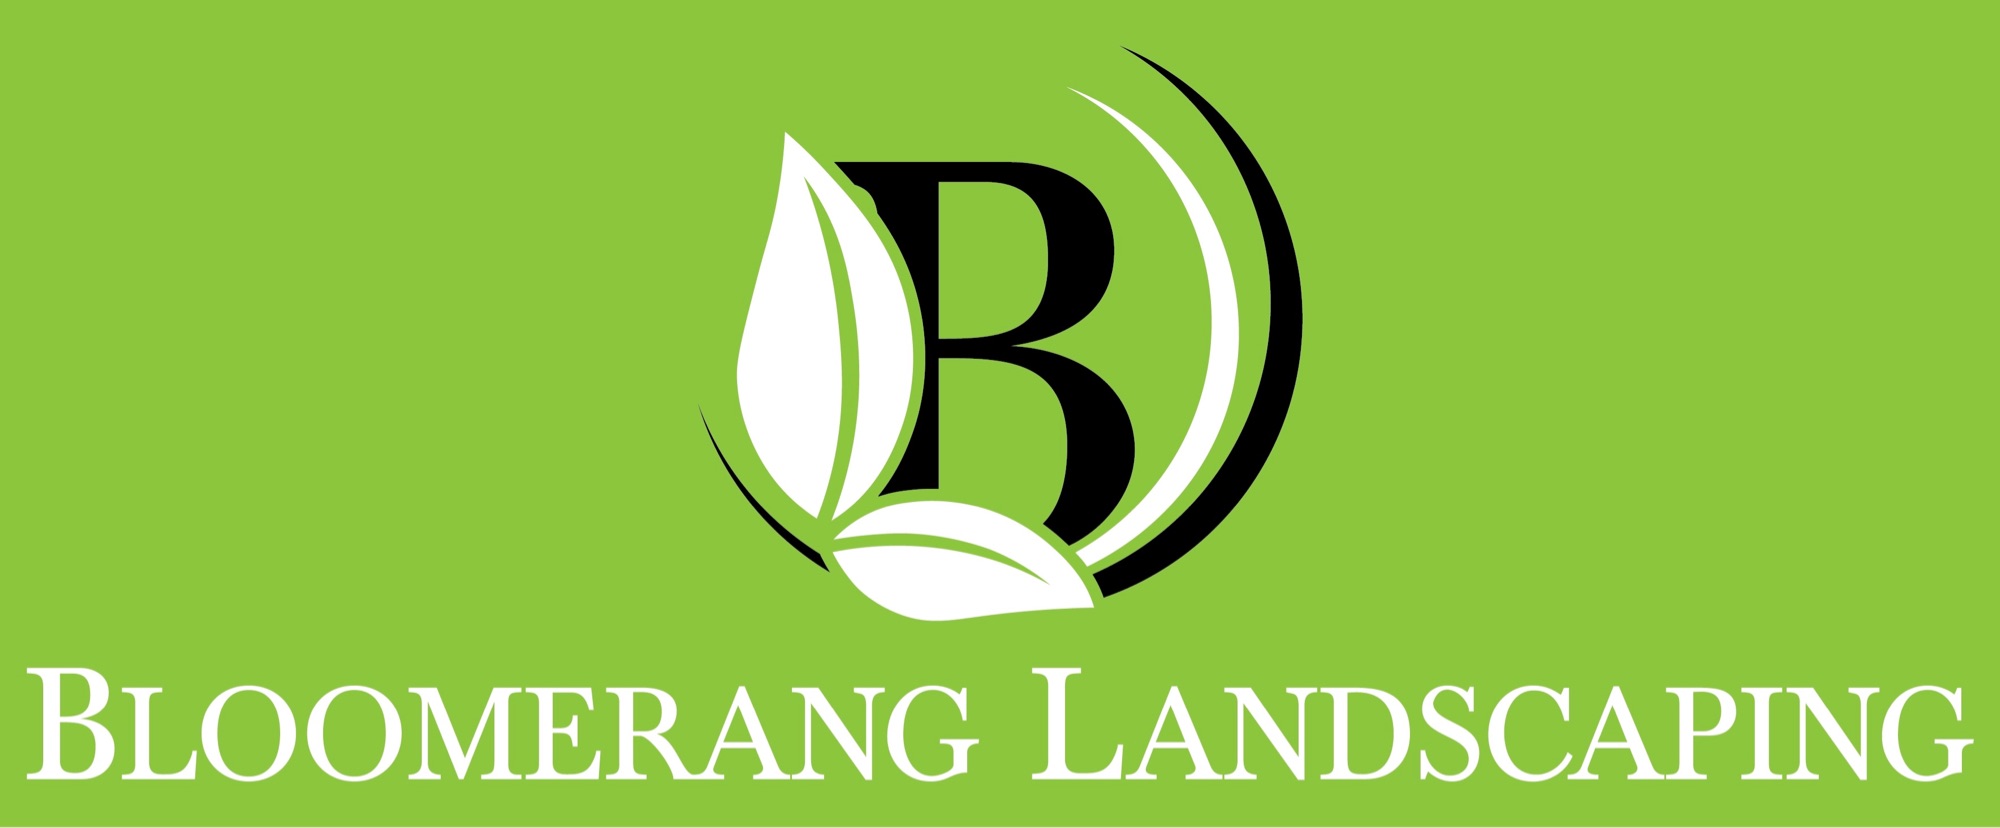 Bloomerang Landscaping Logo